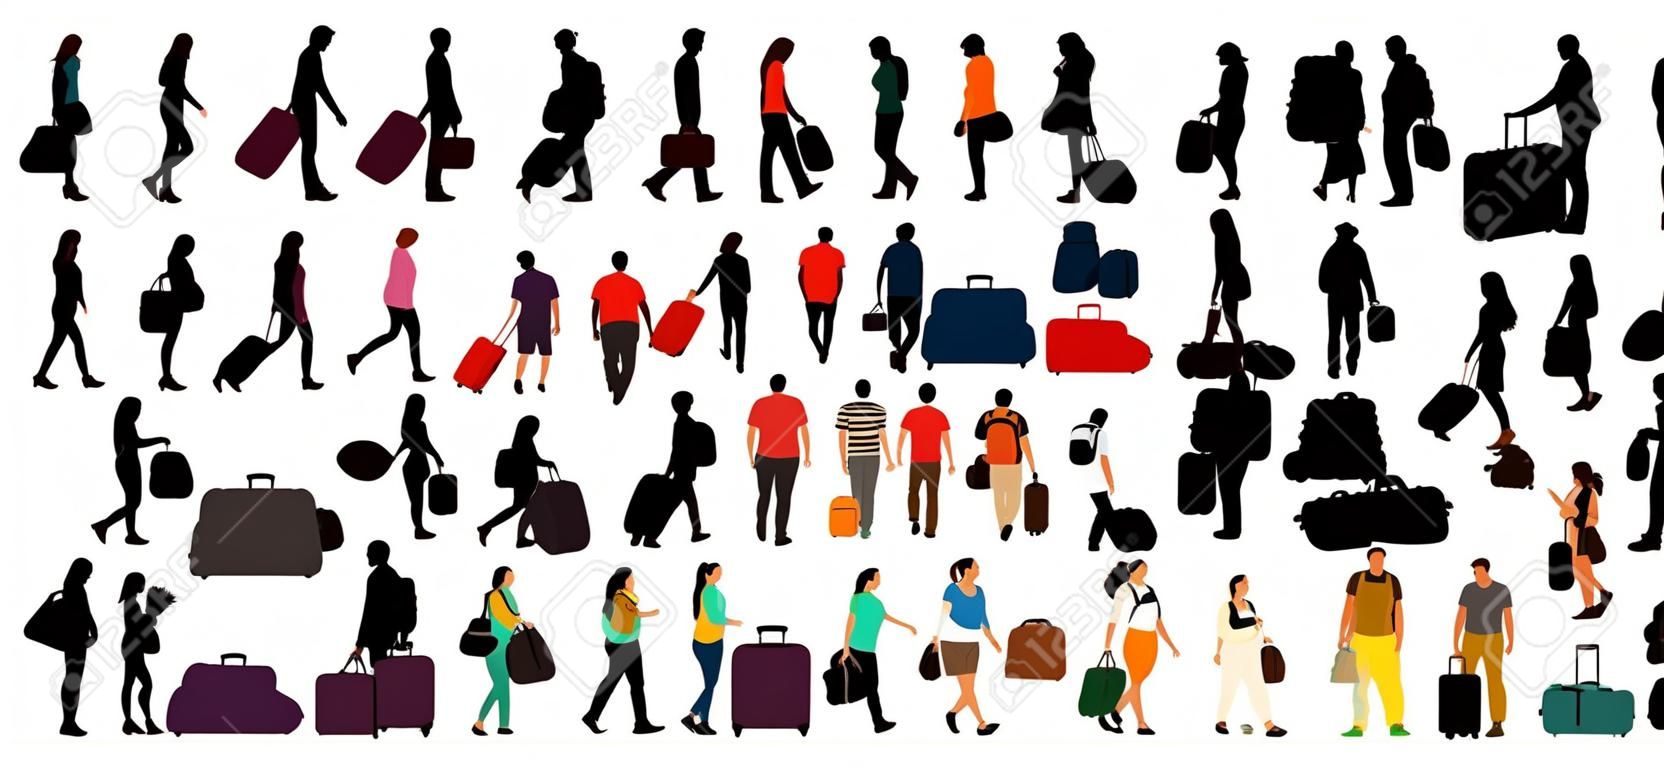 Persone con valigie e borse. Isolato su sfondo bianco. Illustrazione della siluetta di vettore